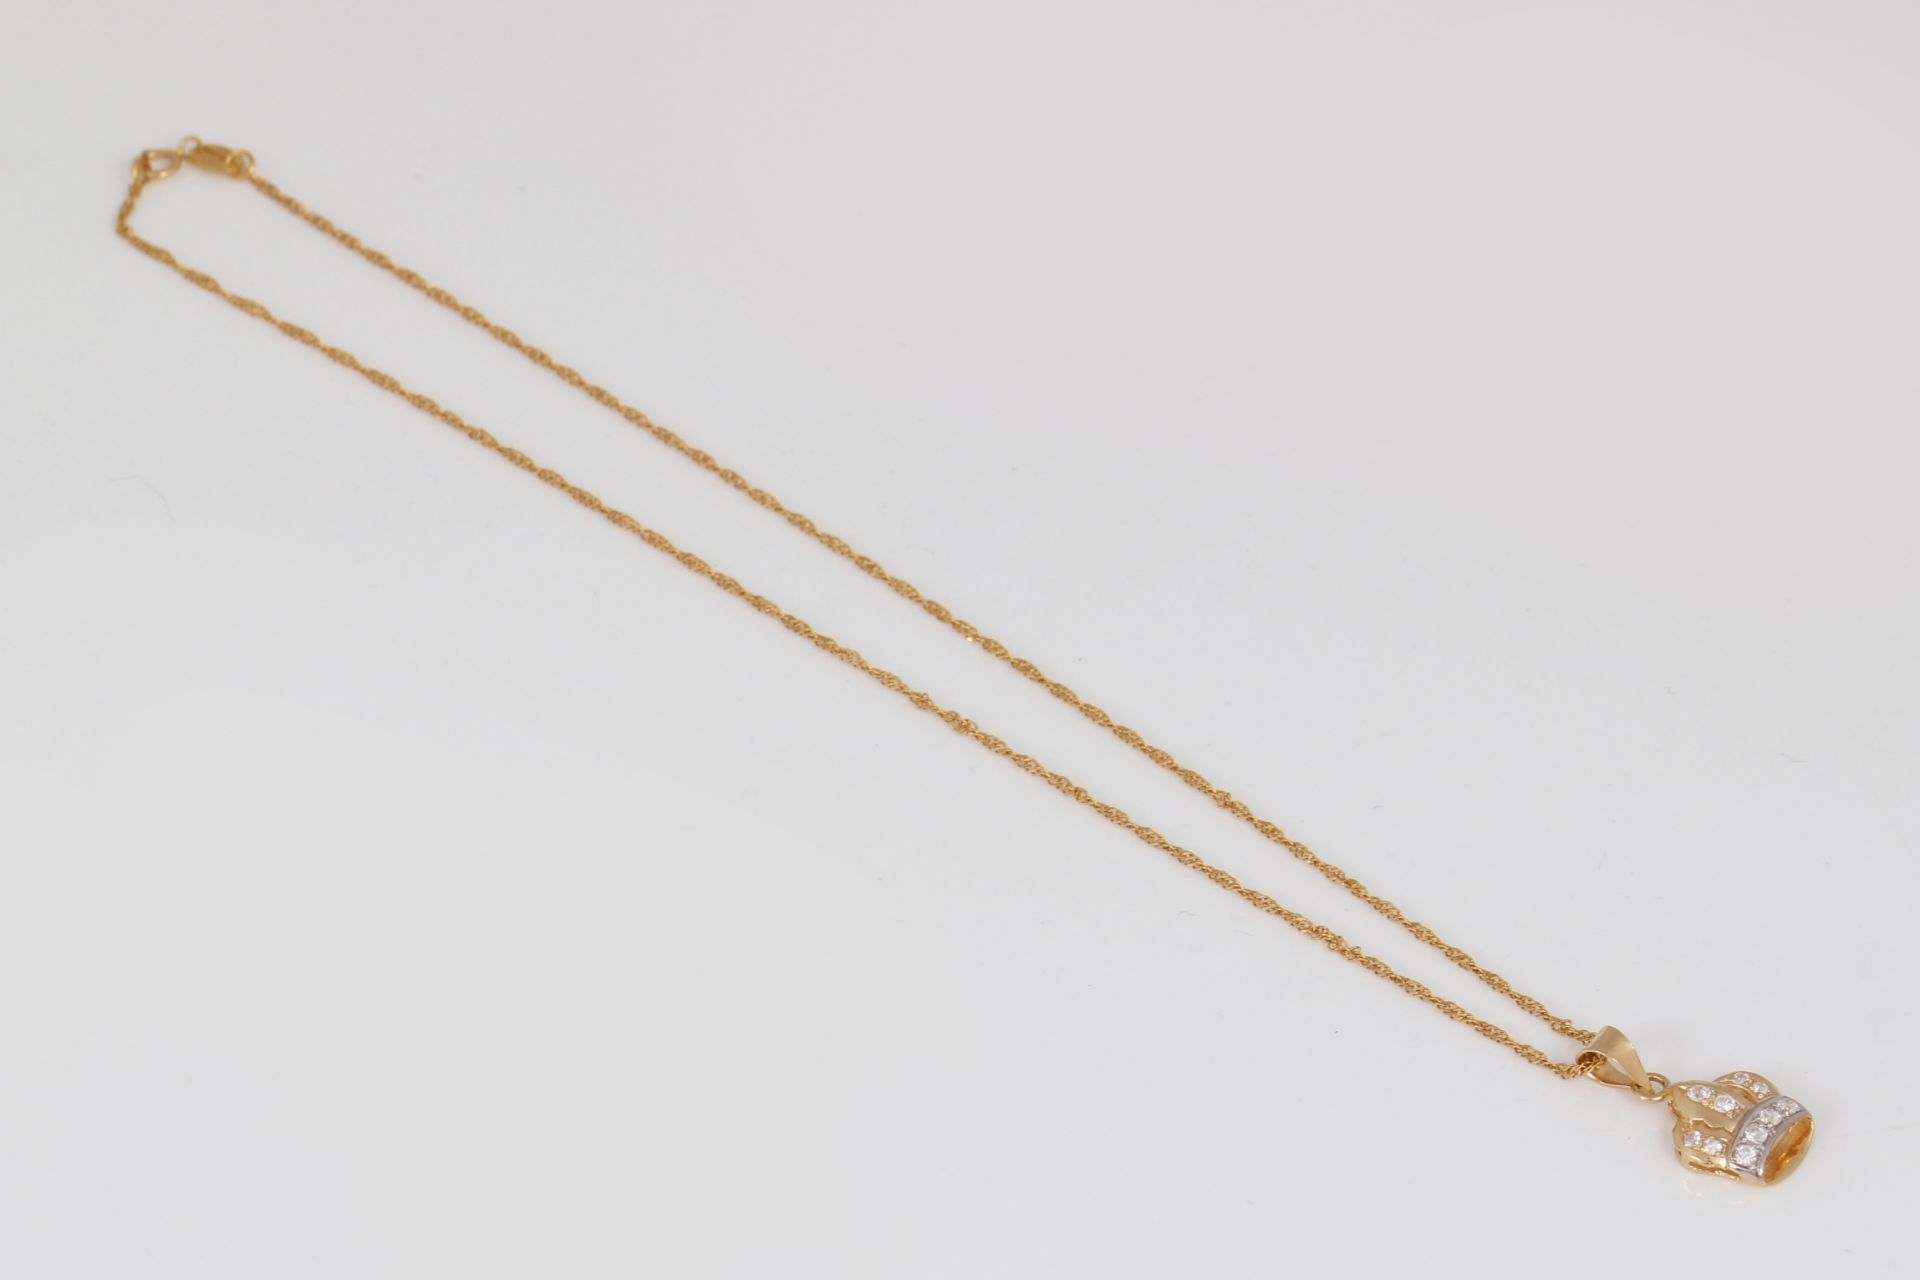 Halskette mit Kronen-Anhänger - Image 2 of 4